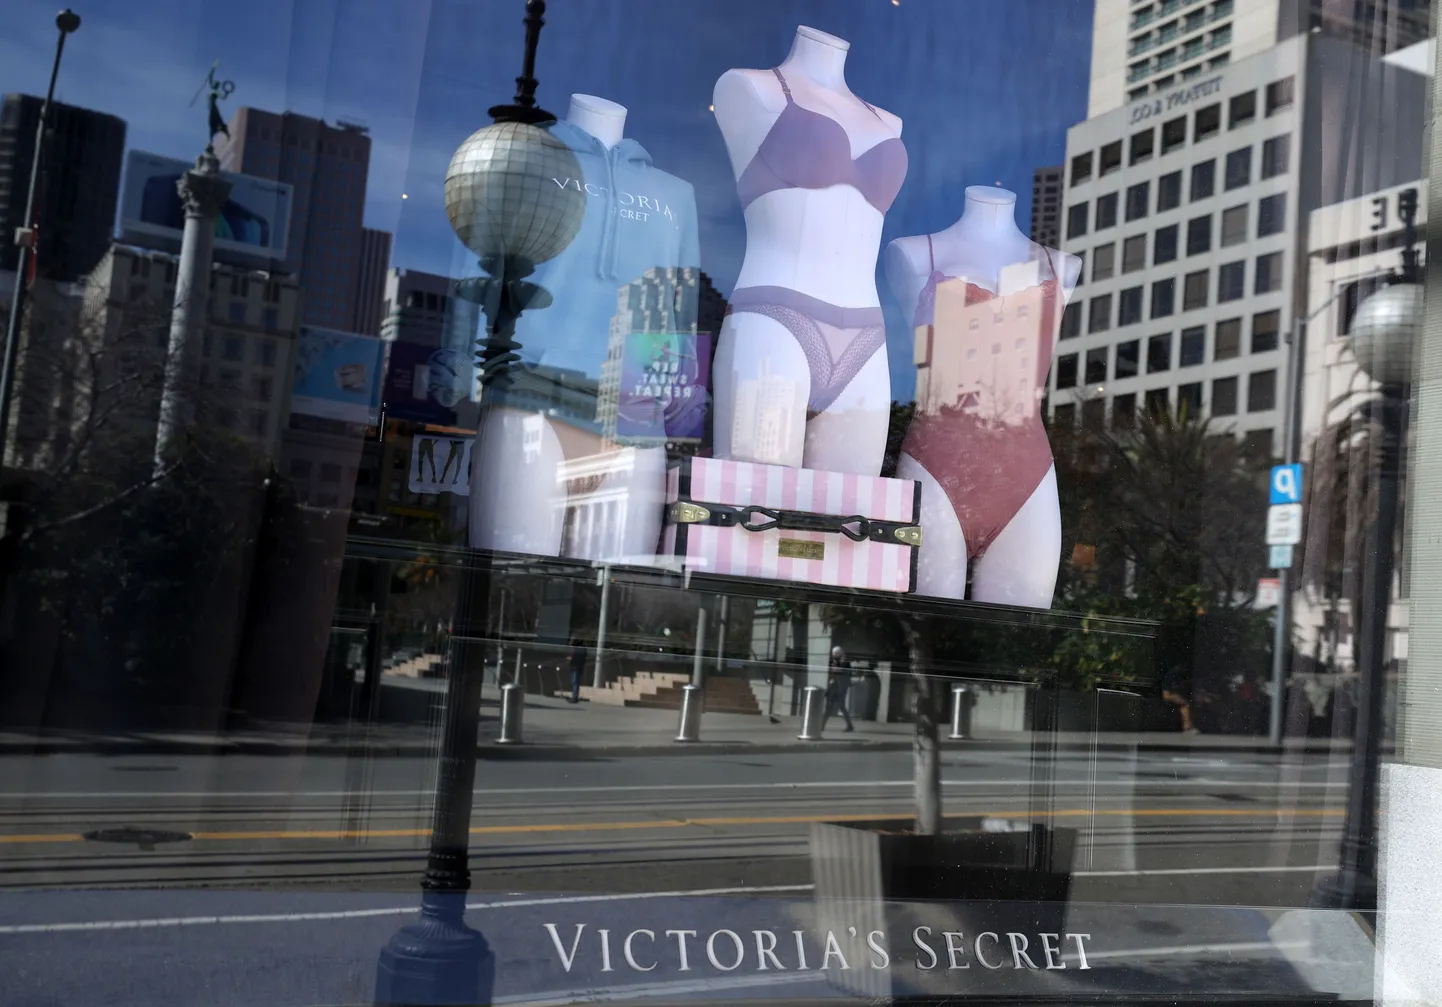 Victoria's Secreti head uudised tõstsid aktsia hinda